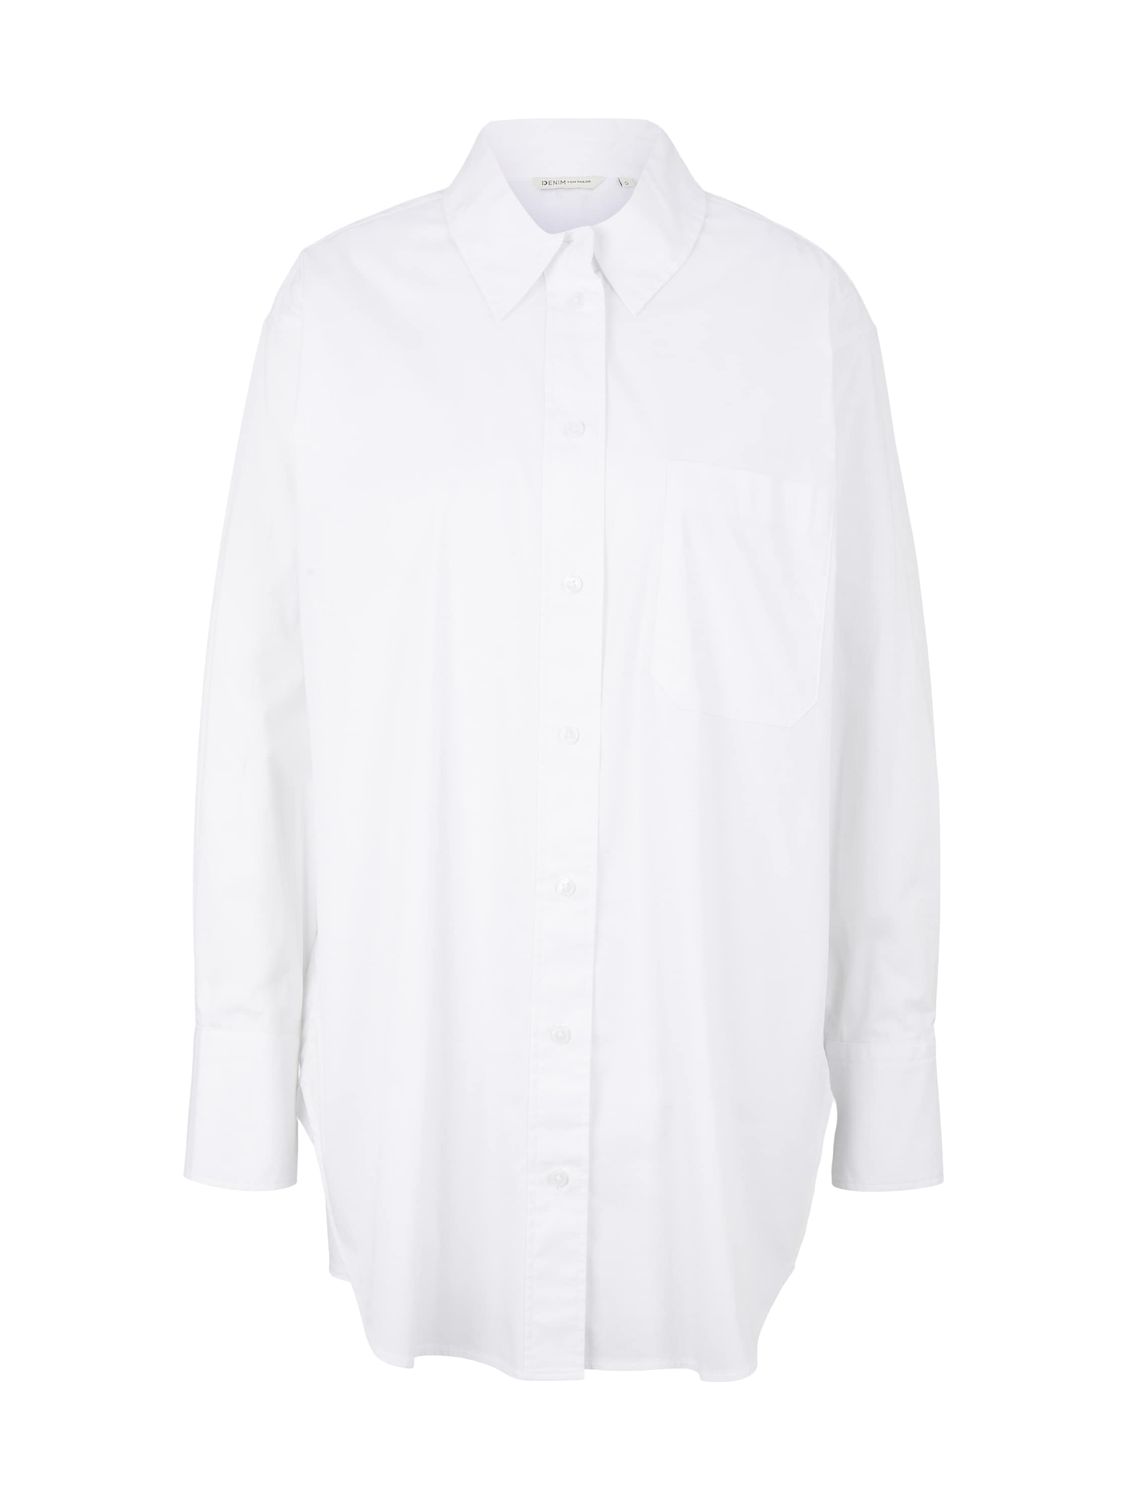 Блуза TOM TAILOR Denim CHEST POCKET, белый